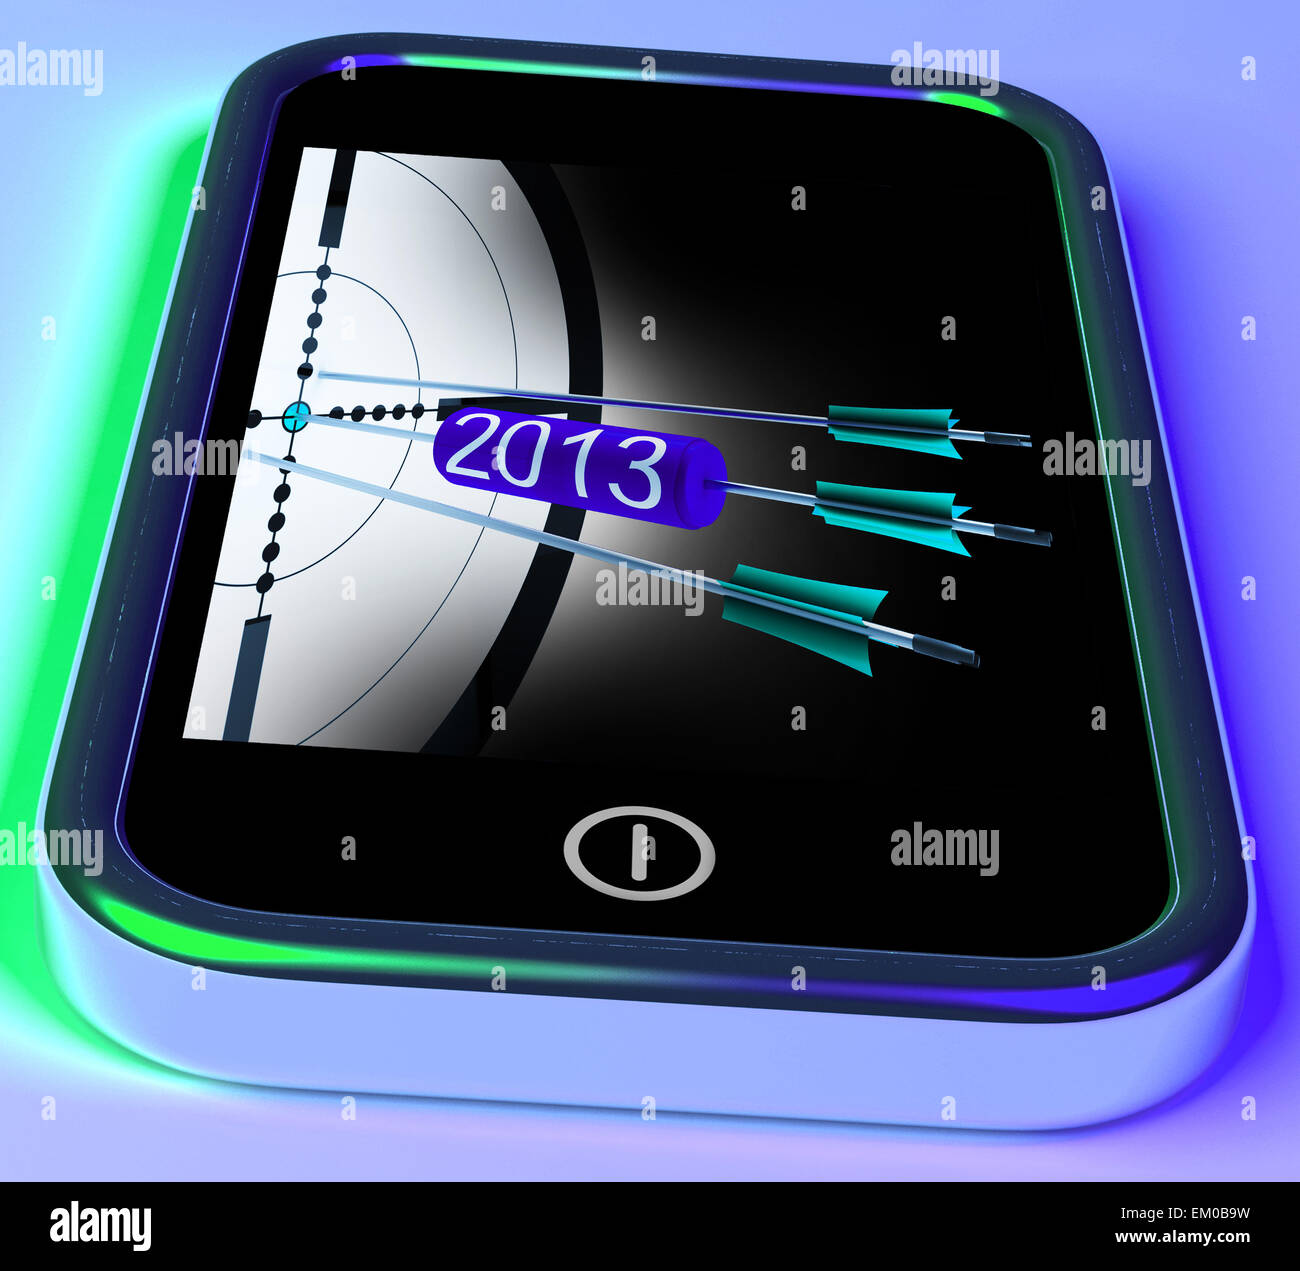 2013 Arrows sur Smartphone montrant les futurs objectifs Banque D'Images